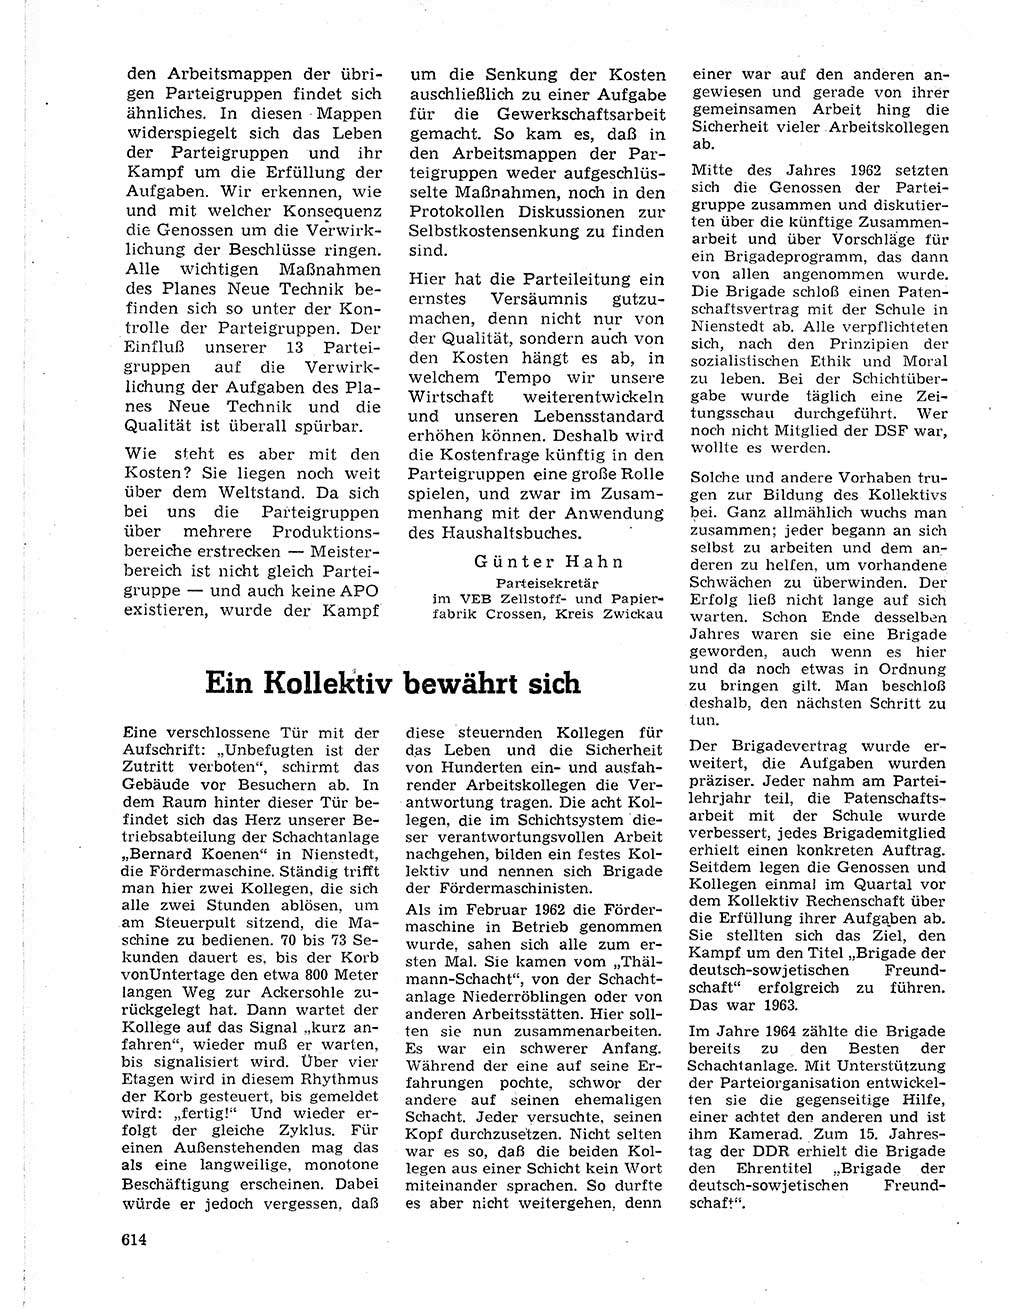 Neuer Weg (NW), Organ des Zentralkomitees (ZK) der SED (Sozialistische Einheitspartei Deutschlands) für Fragen des Parteilebens, 21. Jahrgang [Deutsche Demokratische Republik (DDR)] 1966, Seite 614 (NW ZK SED DDR 1966, S. 614)